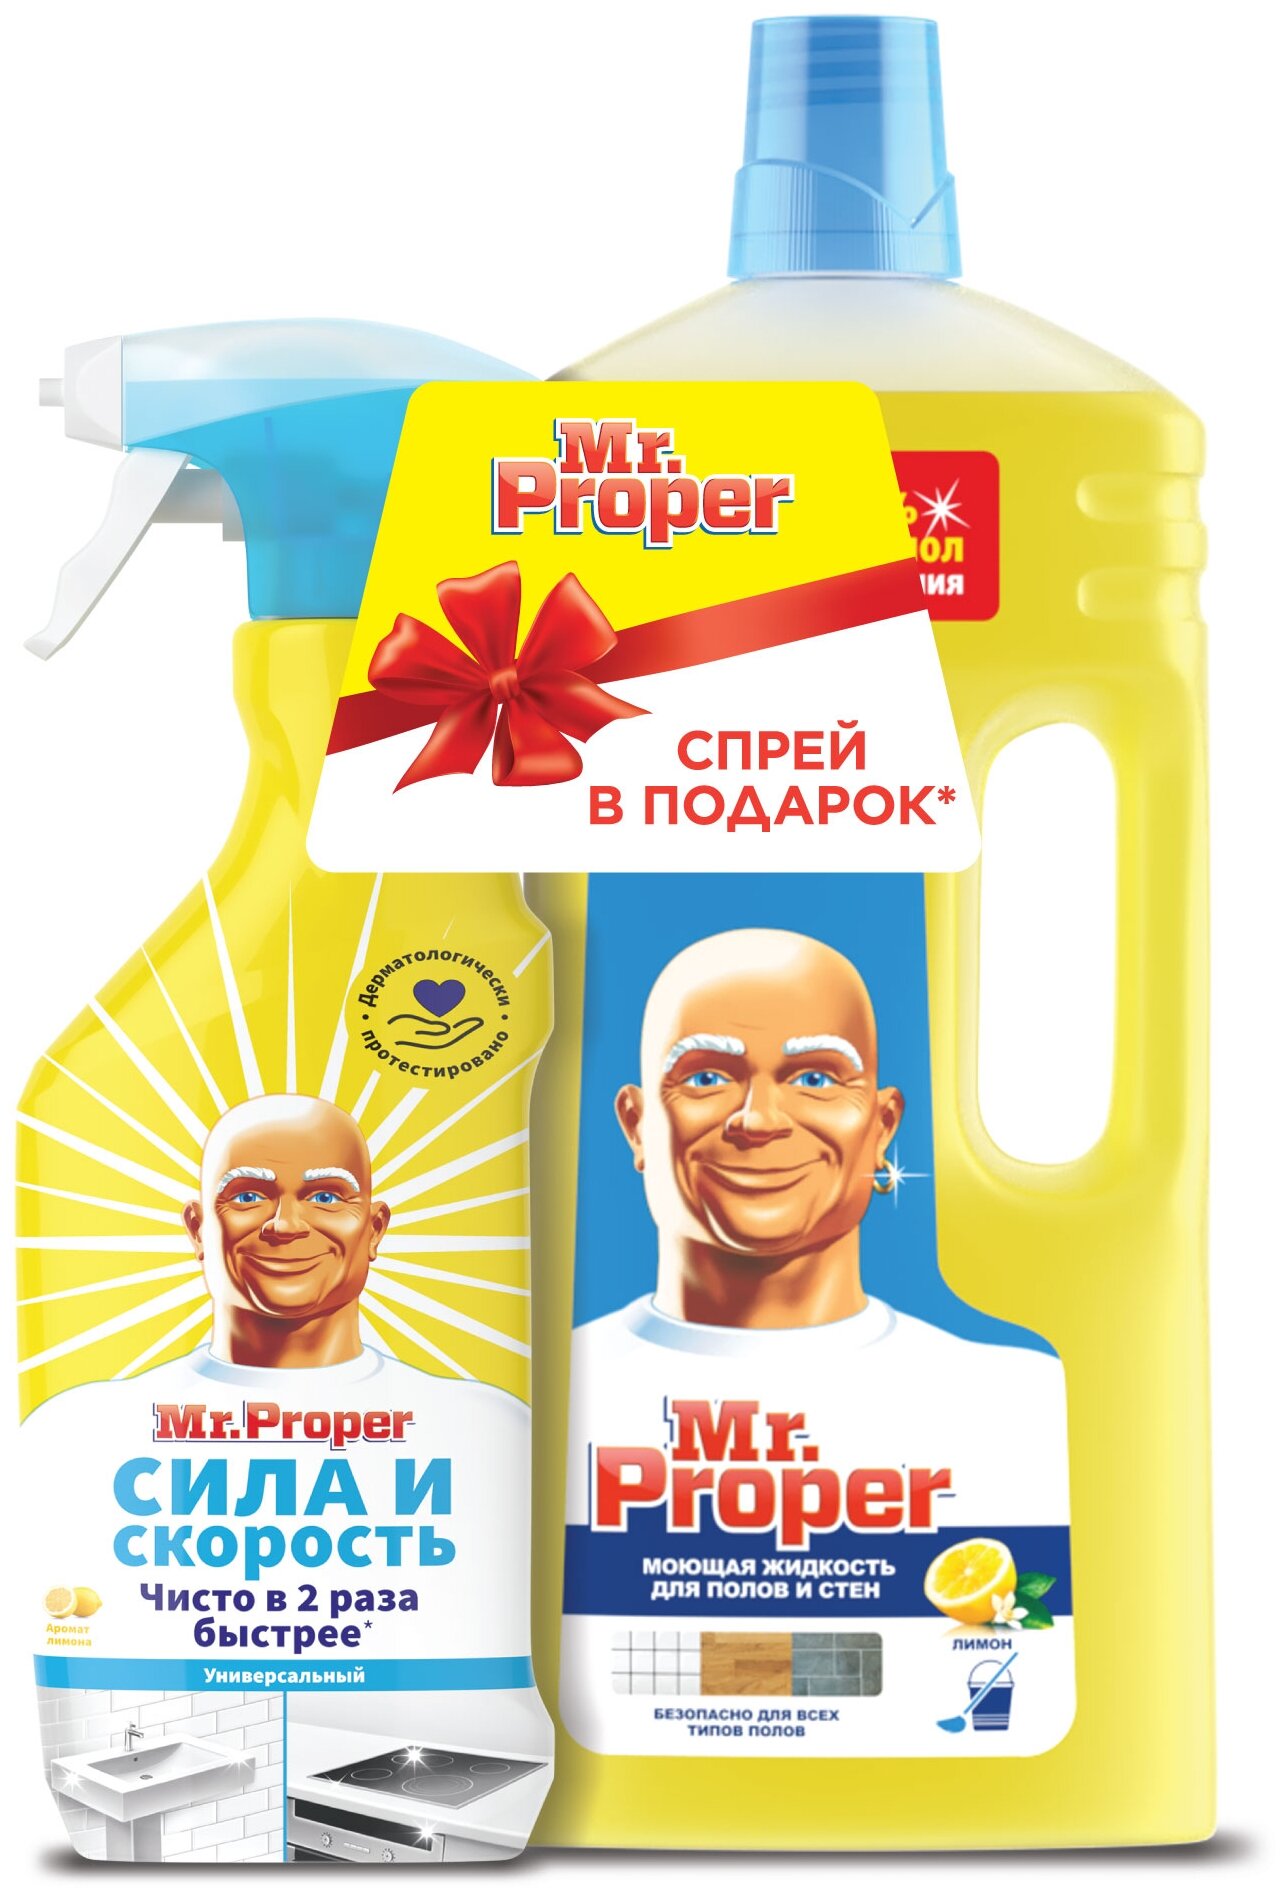 Mr. Proper Набор Моющая жидкость для полов и стен Лимон и Универсальный чистящий спрей Сила и скорость с ароматом Лимона